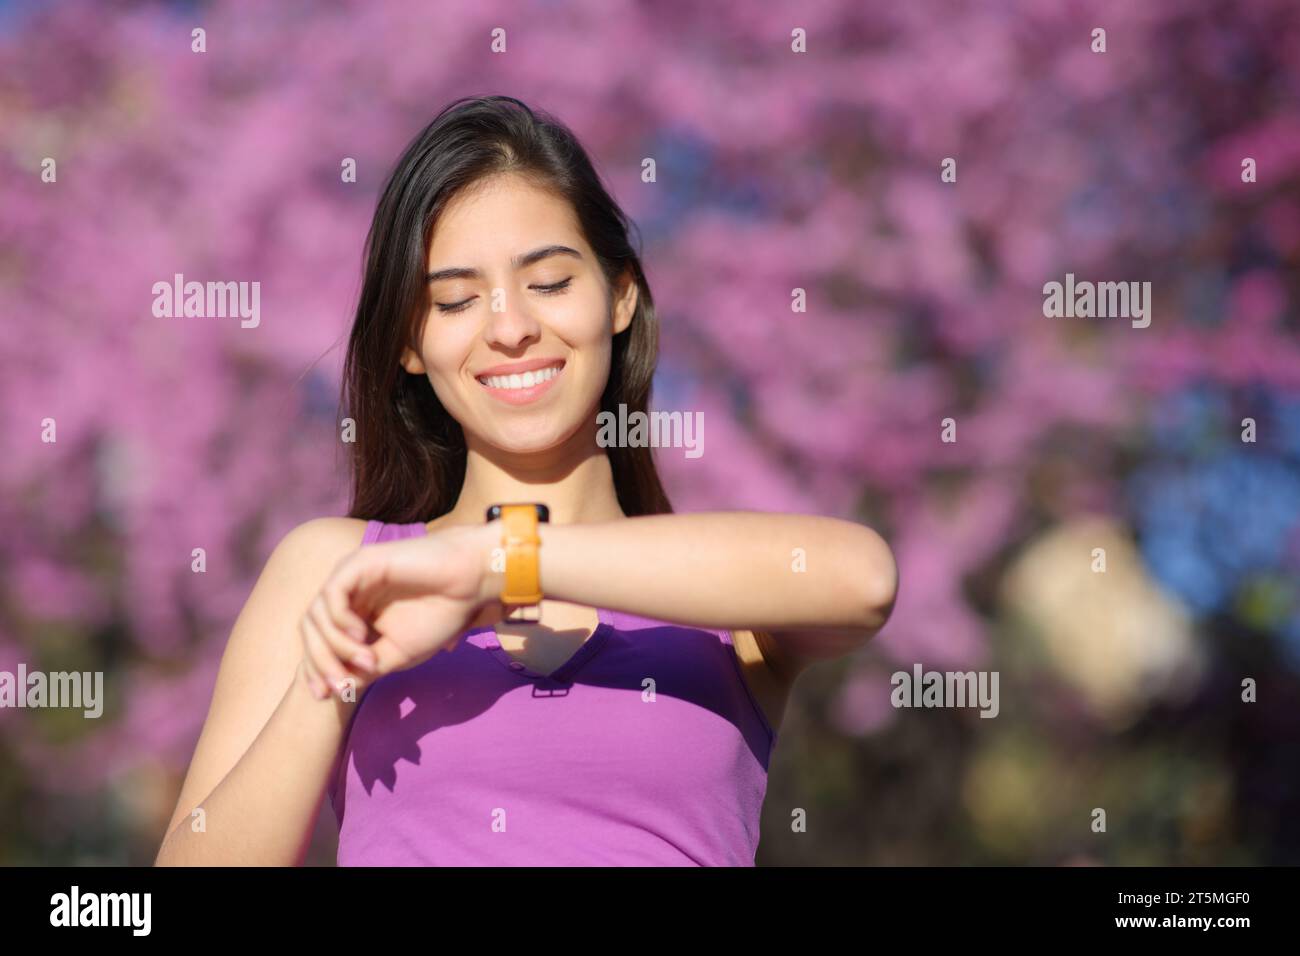 Retrato de la vista frontal de una mujer feliz que comprueba el smartwatch en un parque violeta Foto de stock